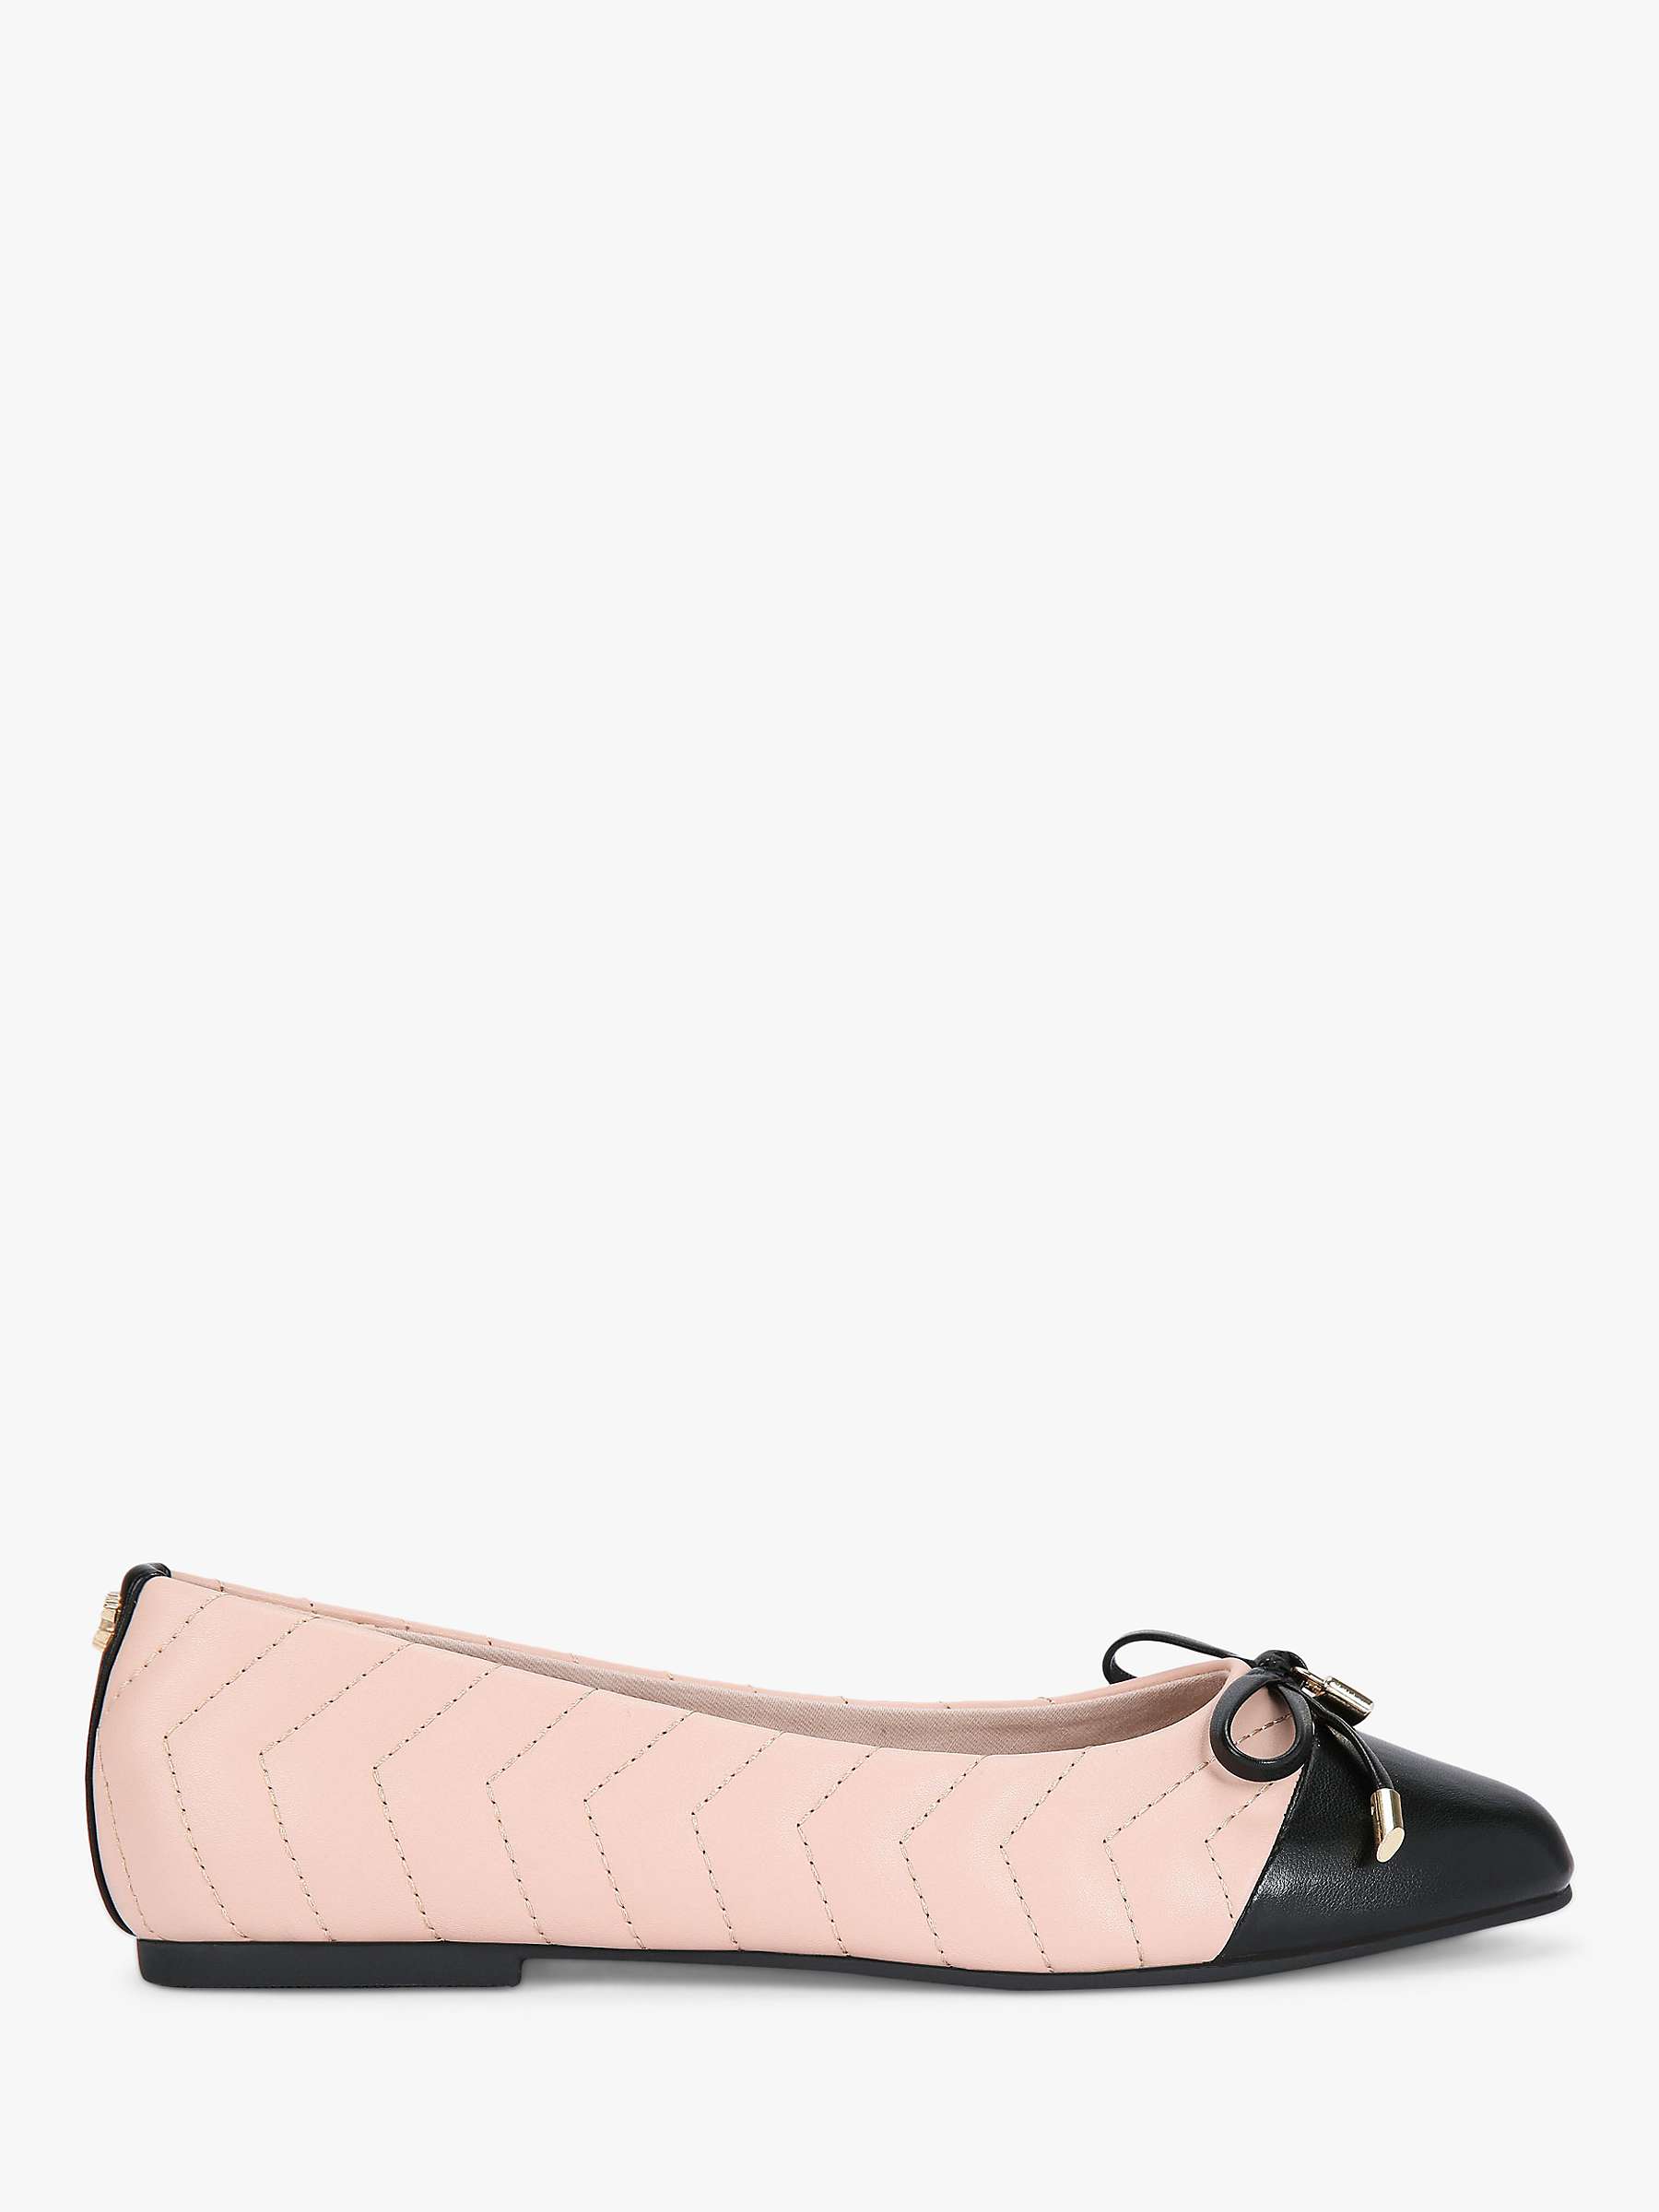 Buy Carvela Lara Ballerina Shoes, Pink/Black Online at johnlewis.com